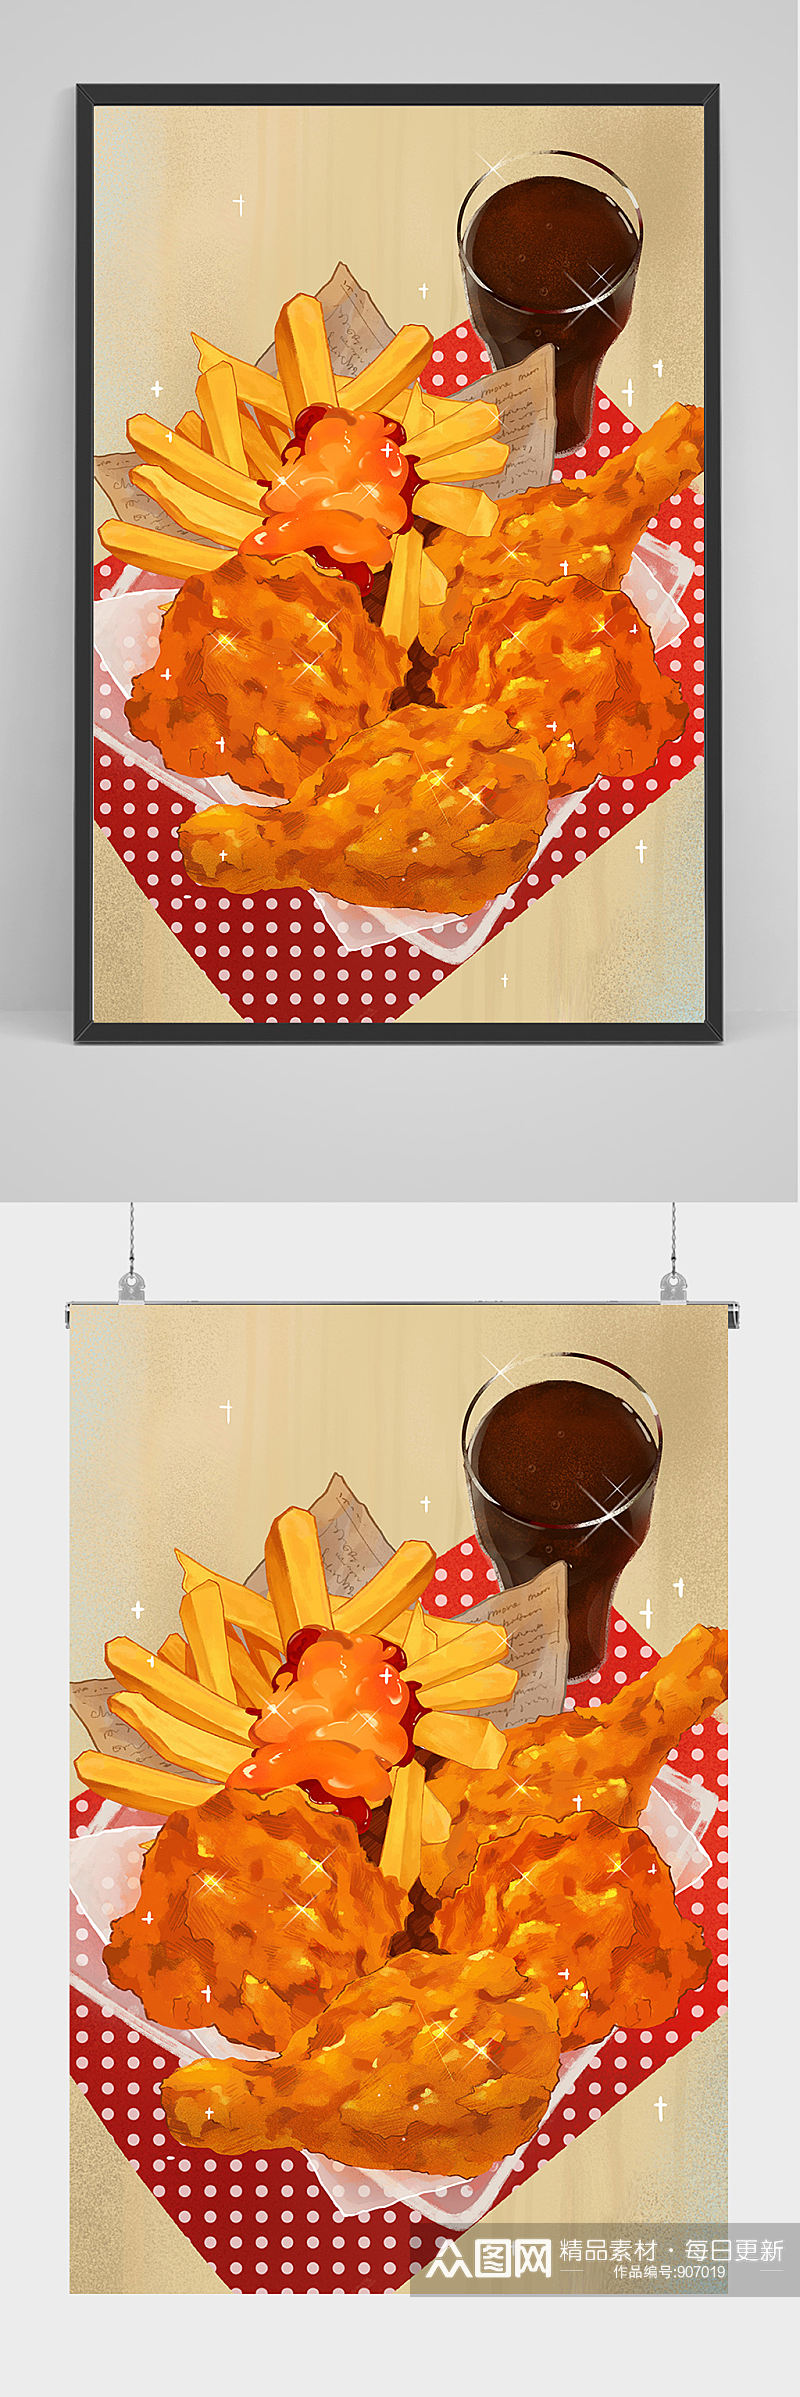 精品薯条炸鸡可乐插画设计素材